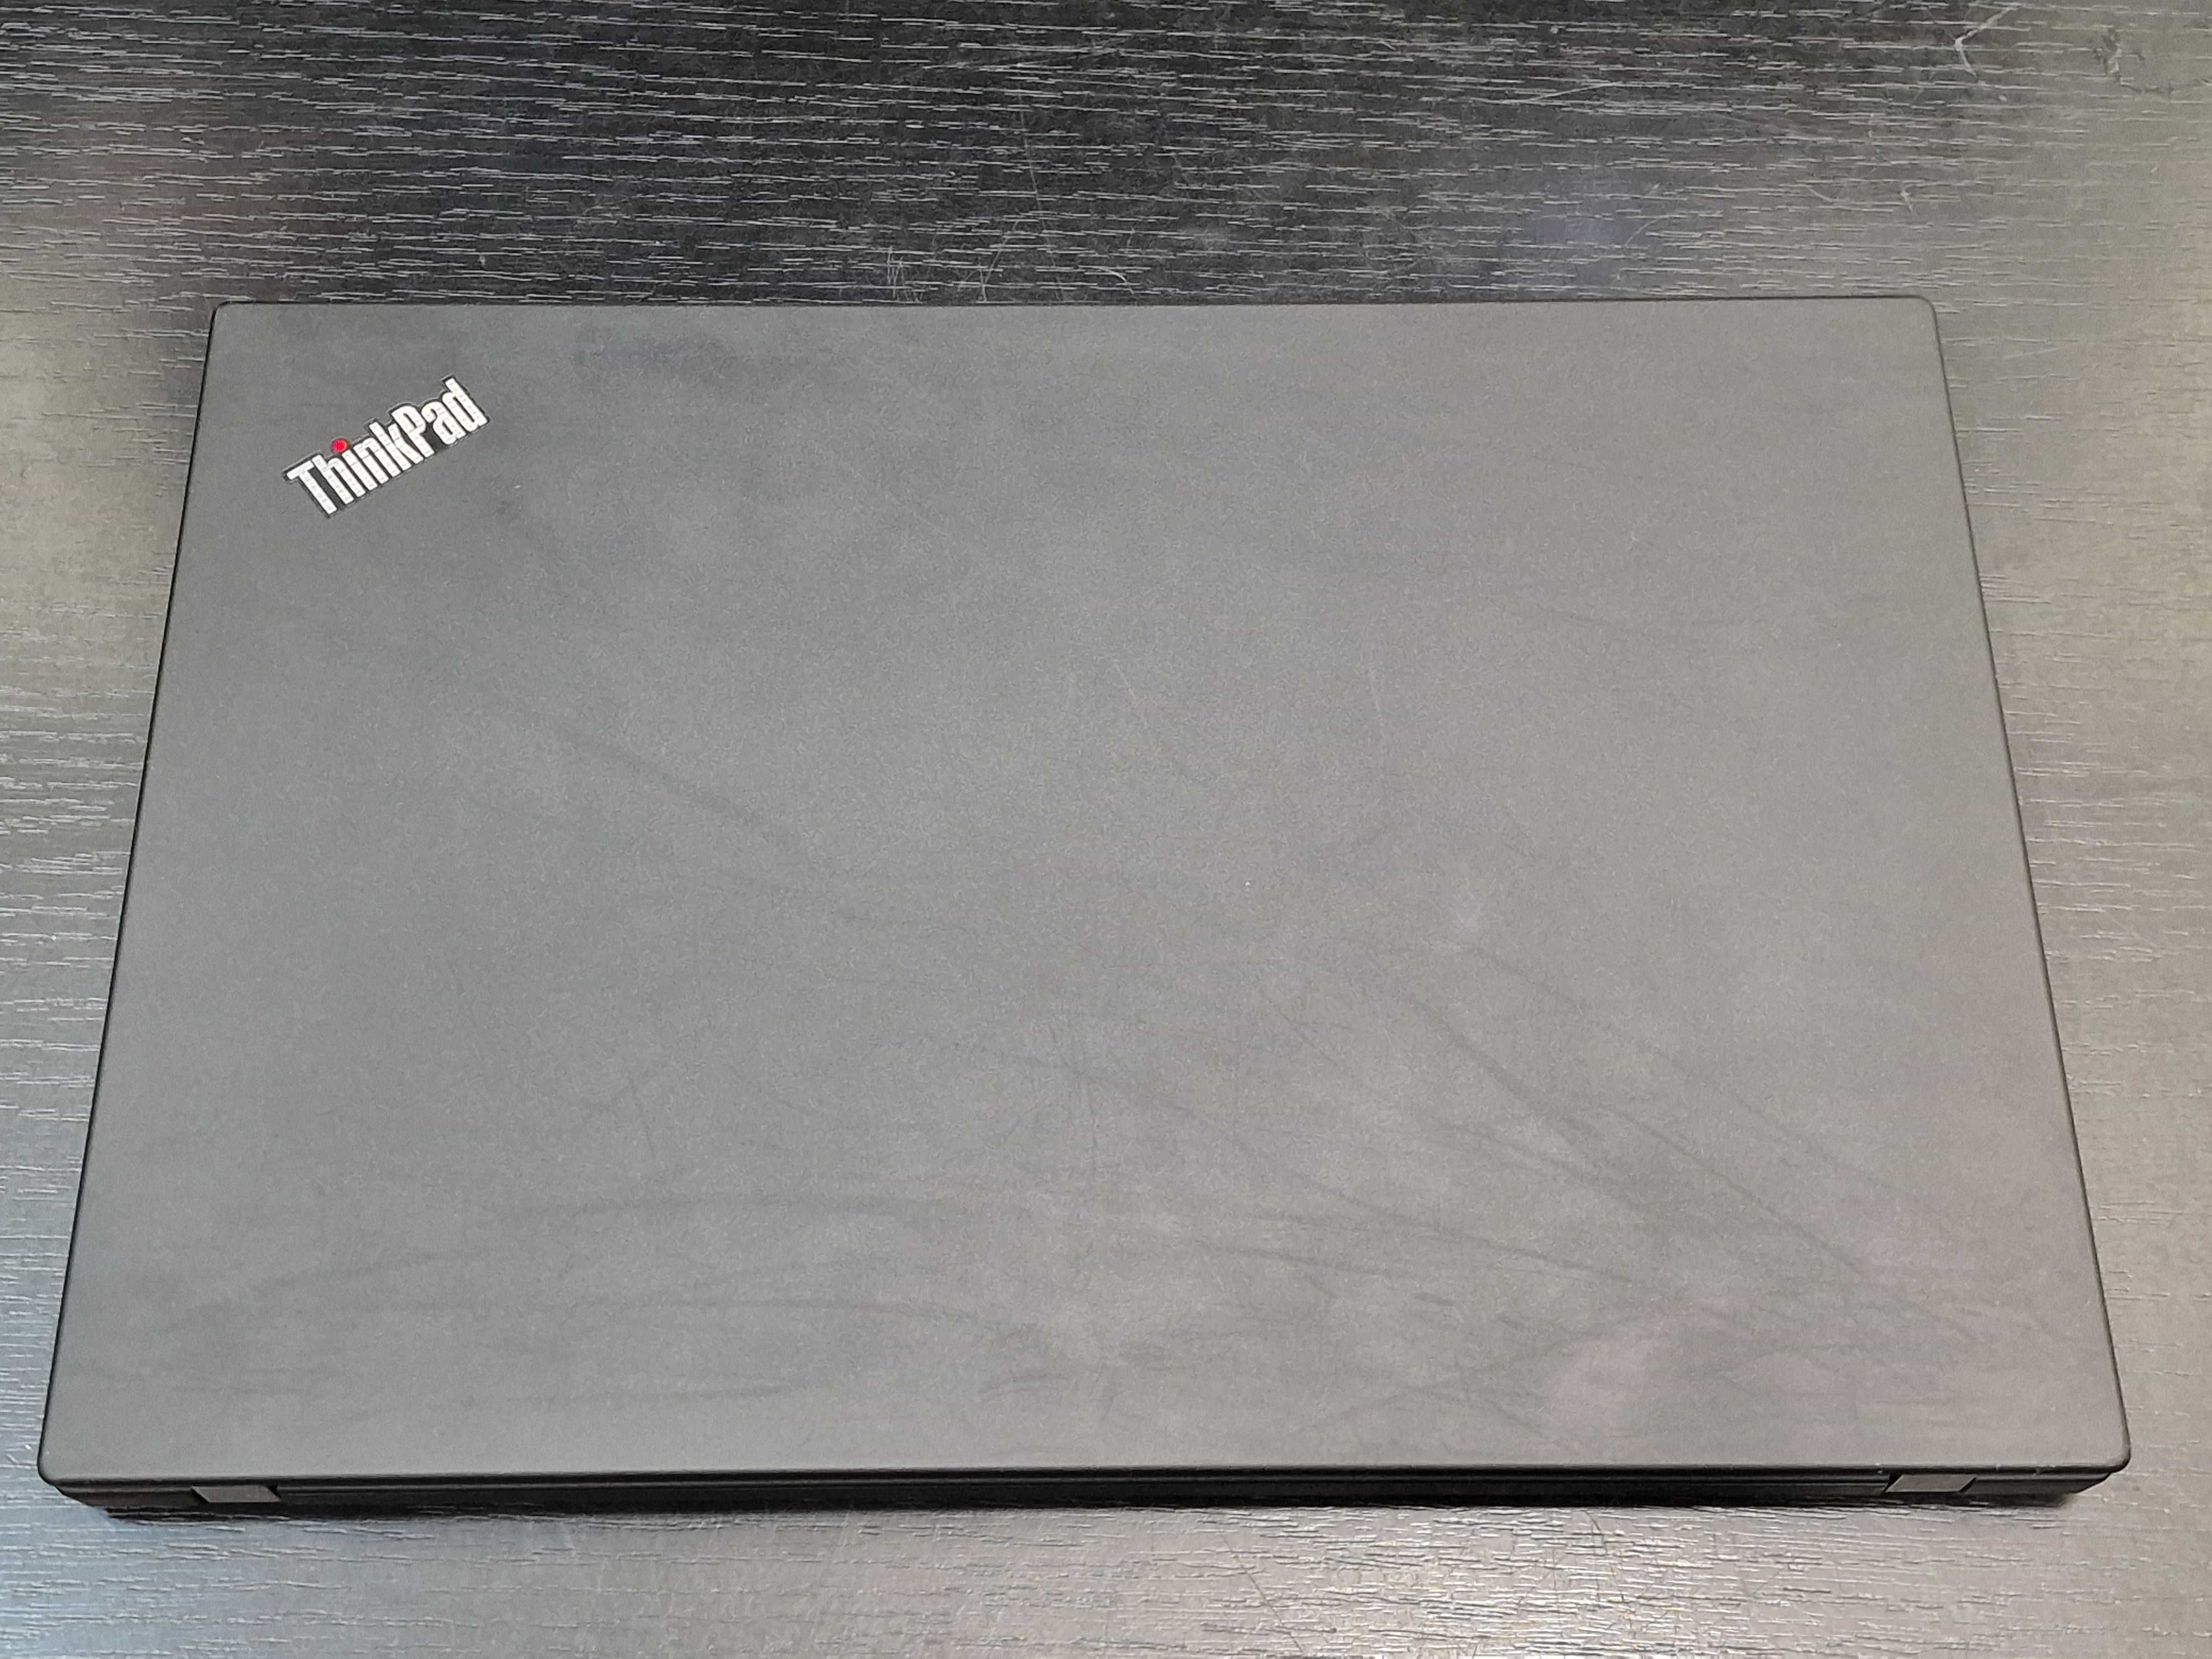 Hope Amanet P8 Laptop Lenovo ThinkPad T490